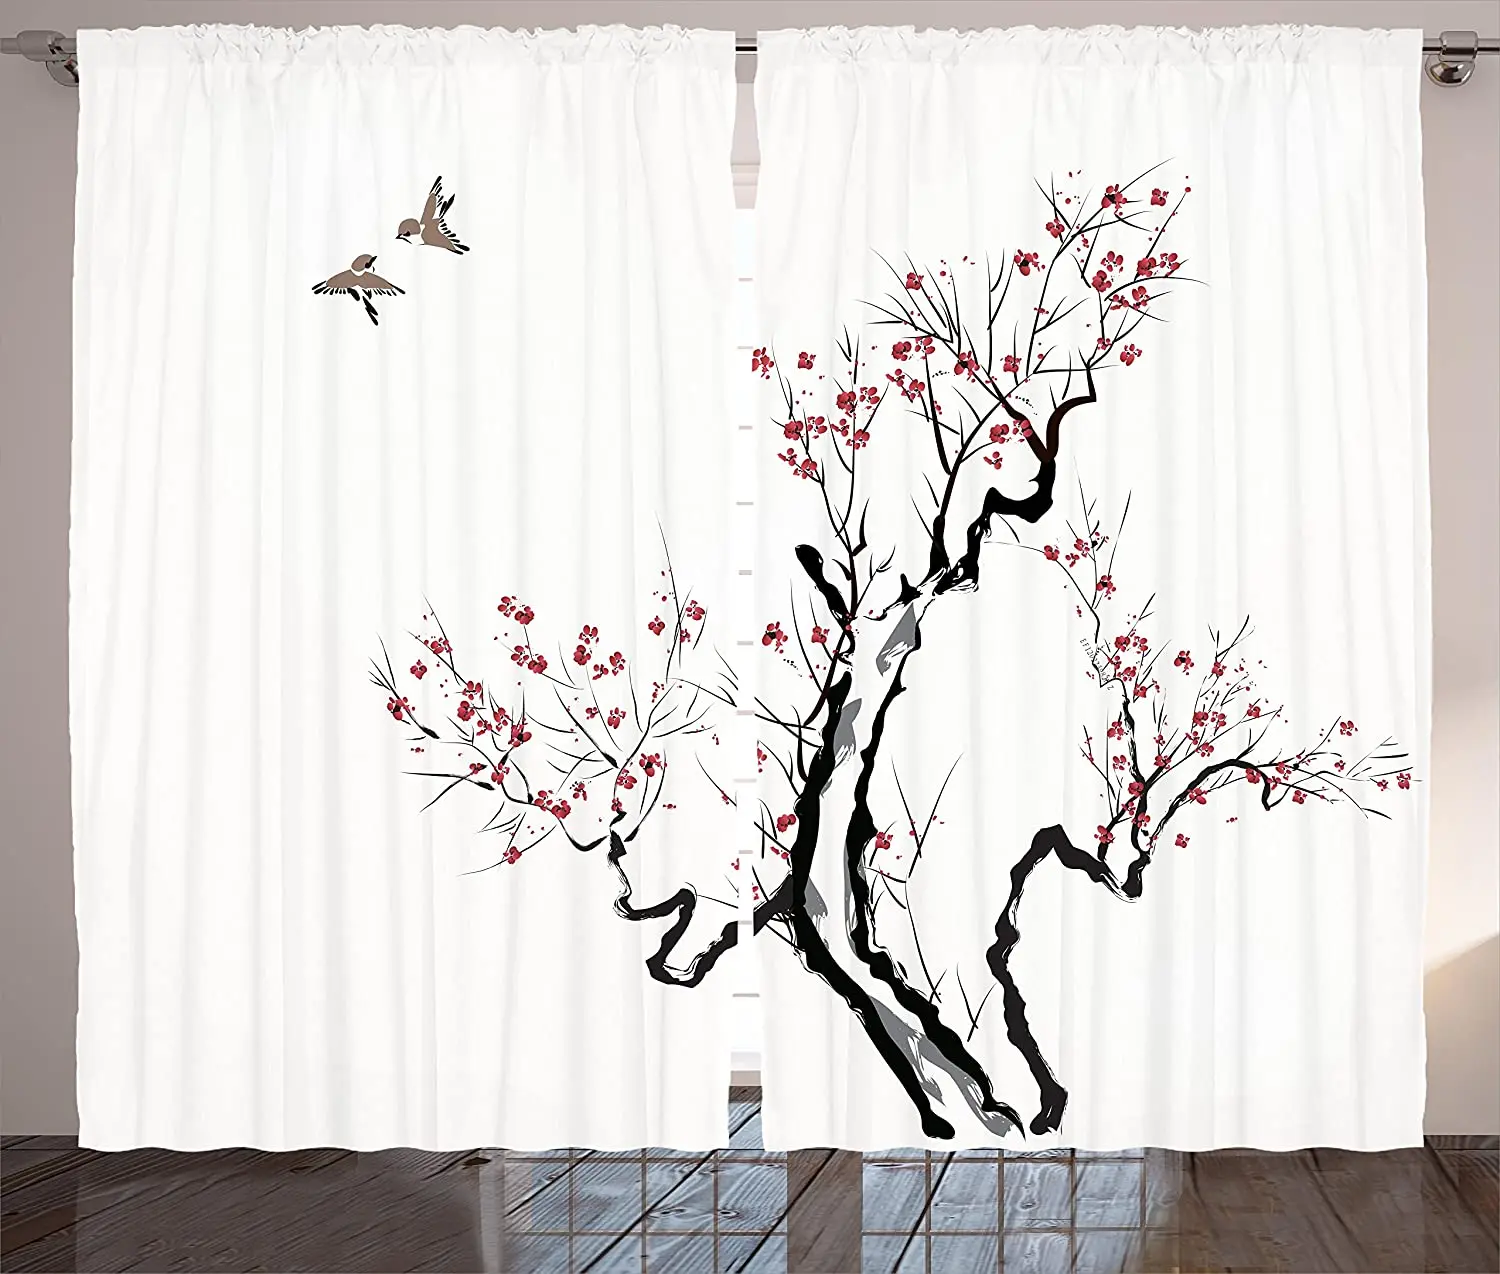 

Японские светонепроницаемые шторы s, Классическая азиатская живопись, стиль искусства цветов, ветвей, цветов и летающих птиц, узорные оконн...